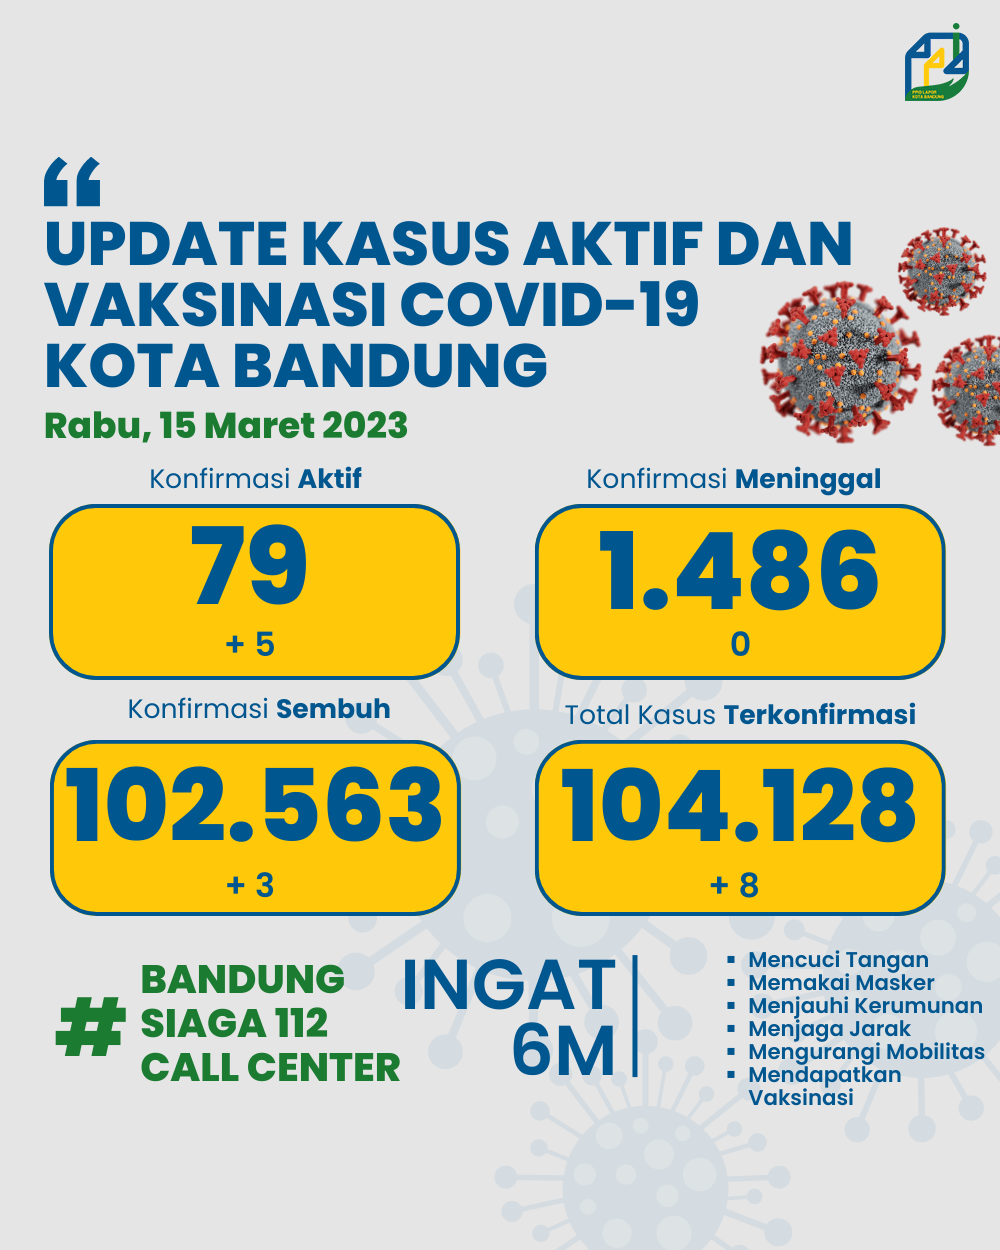 UPDATE STATISTIK COVID-19 DI KOTA BANDUNG PER TANGGAL 15 MARET 2023